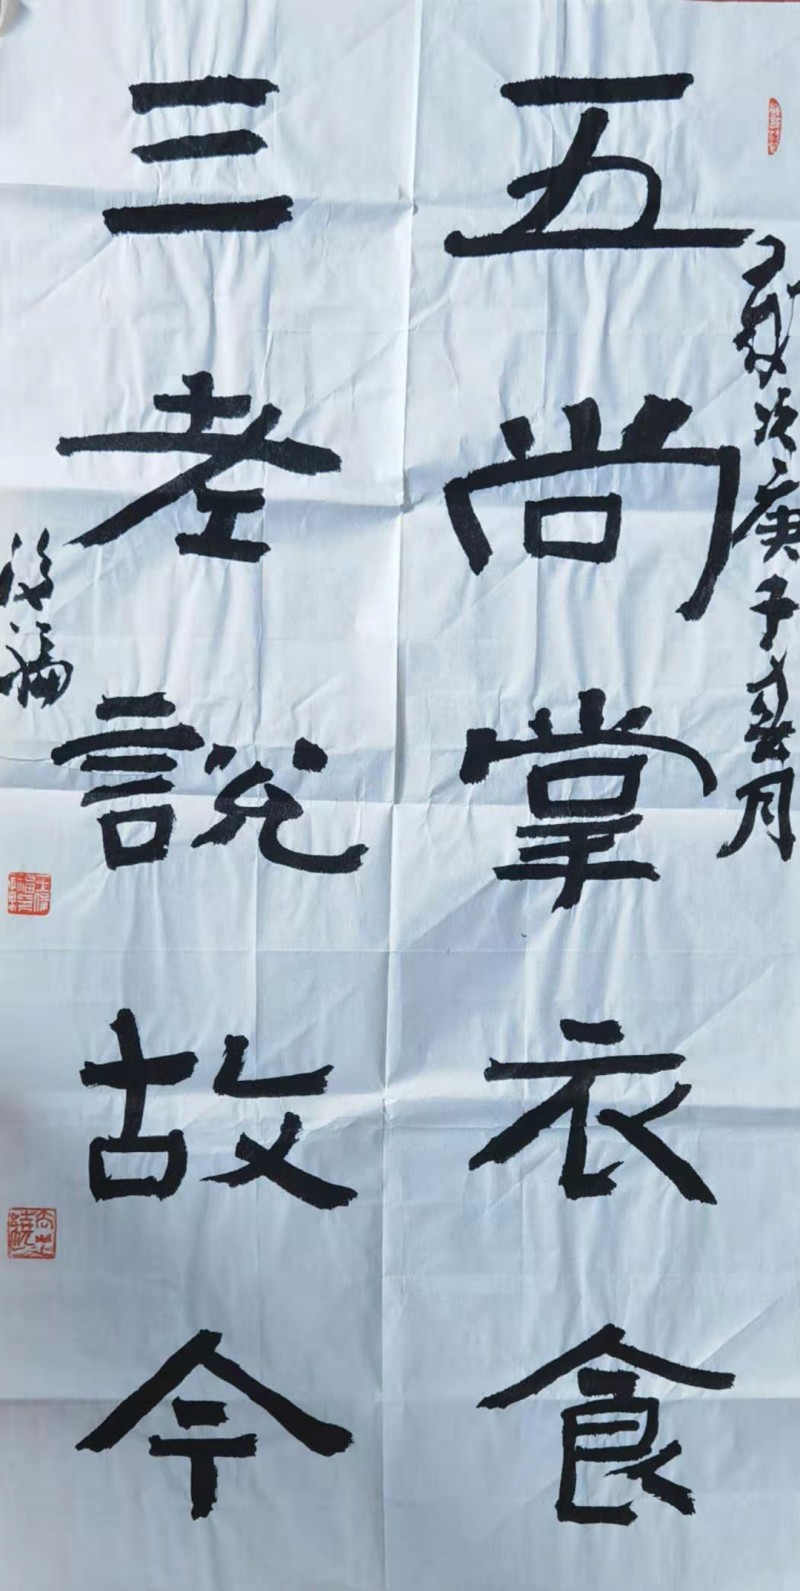 中国楹联学会中宣盛世文化艺术交流中心书画风采展示——王俊福